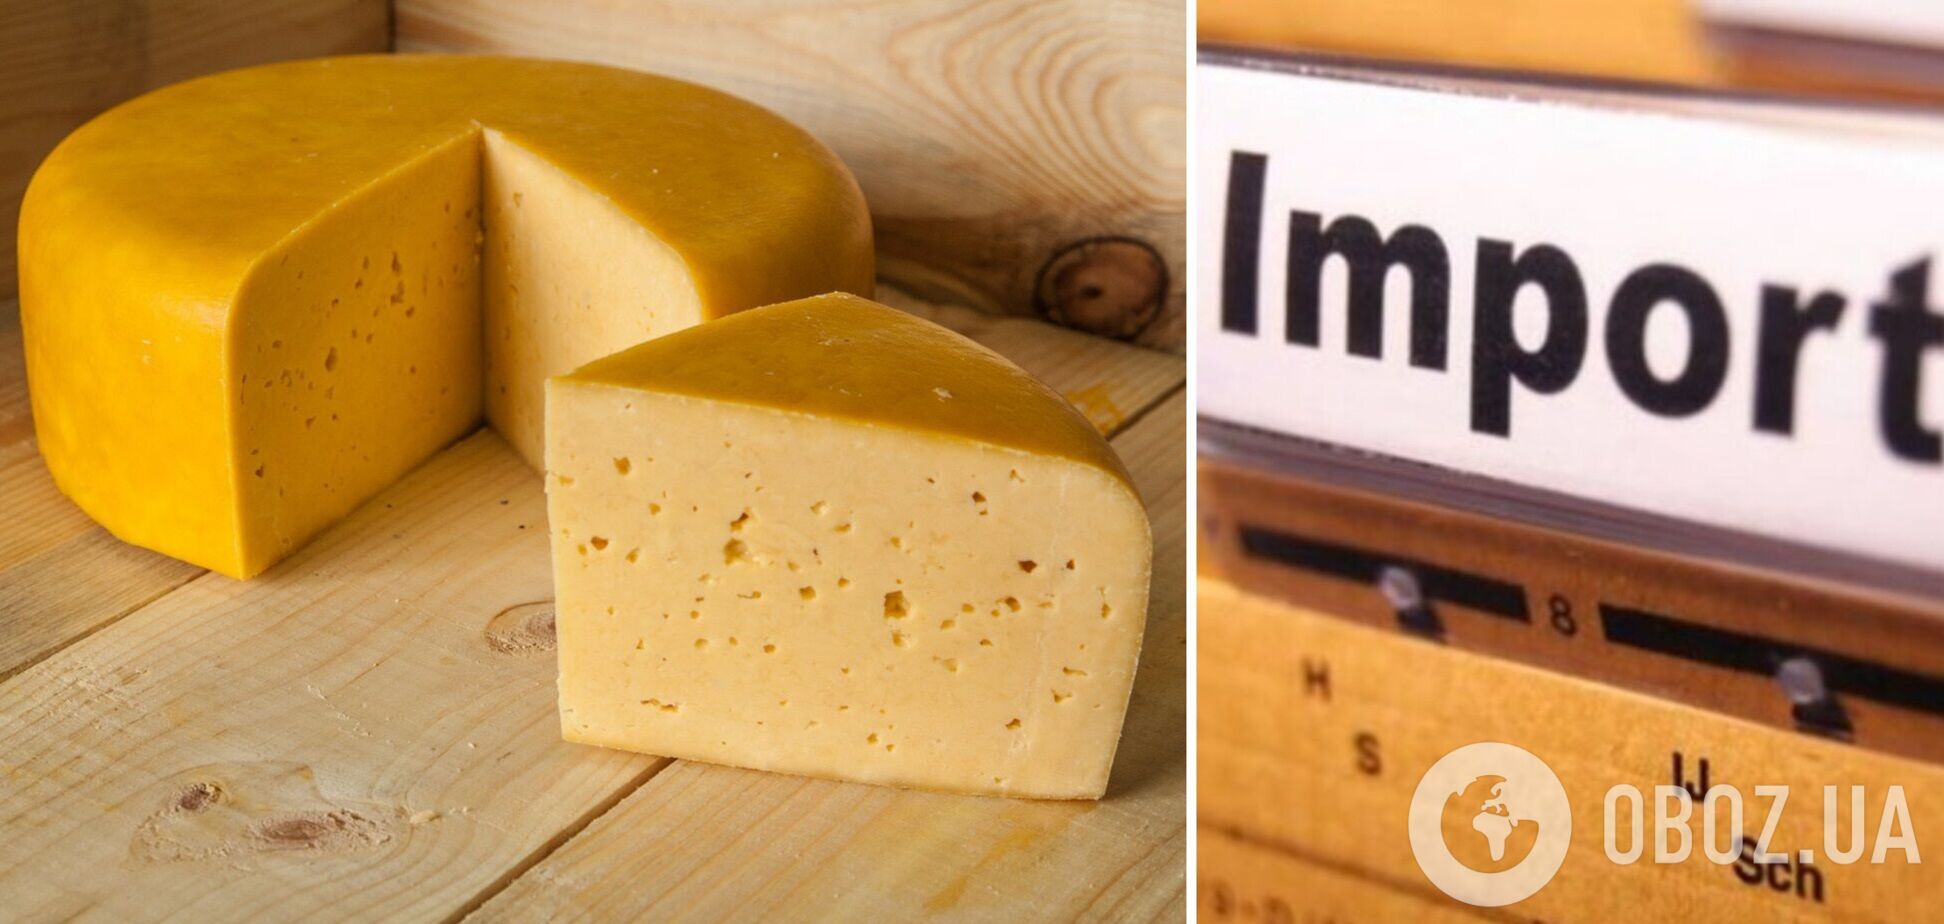 Україна розпочала розслідування щодо імпорту сирів